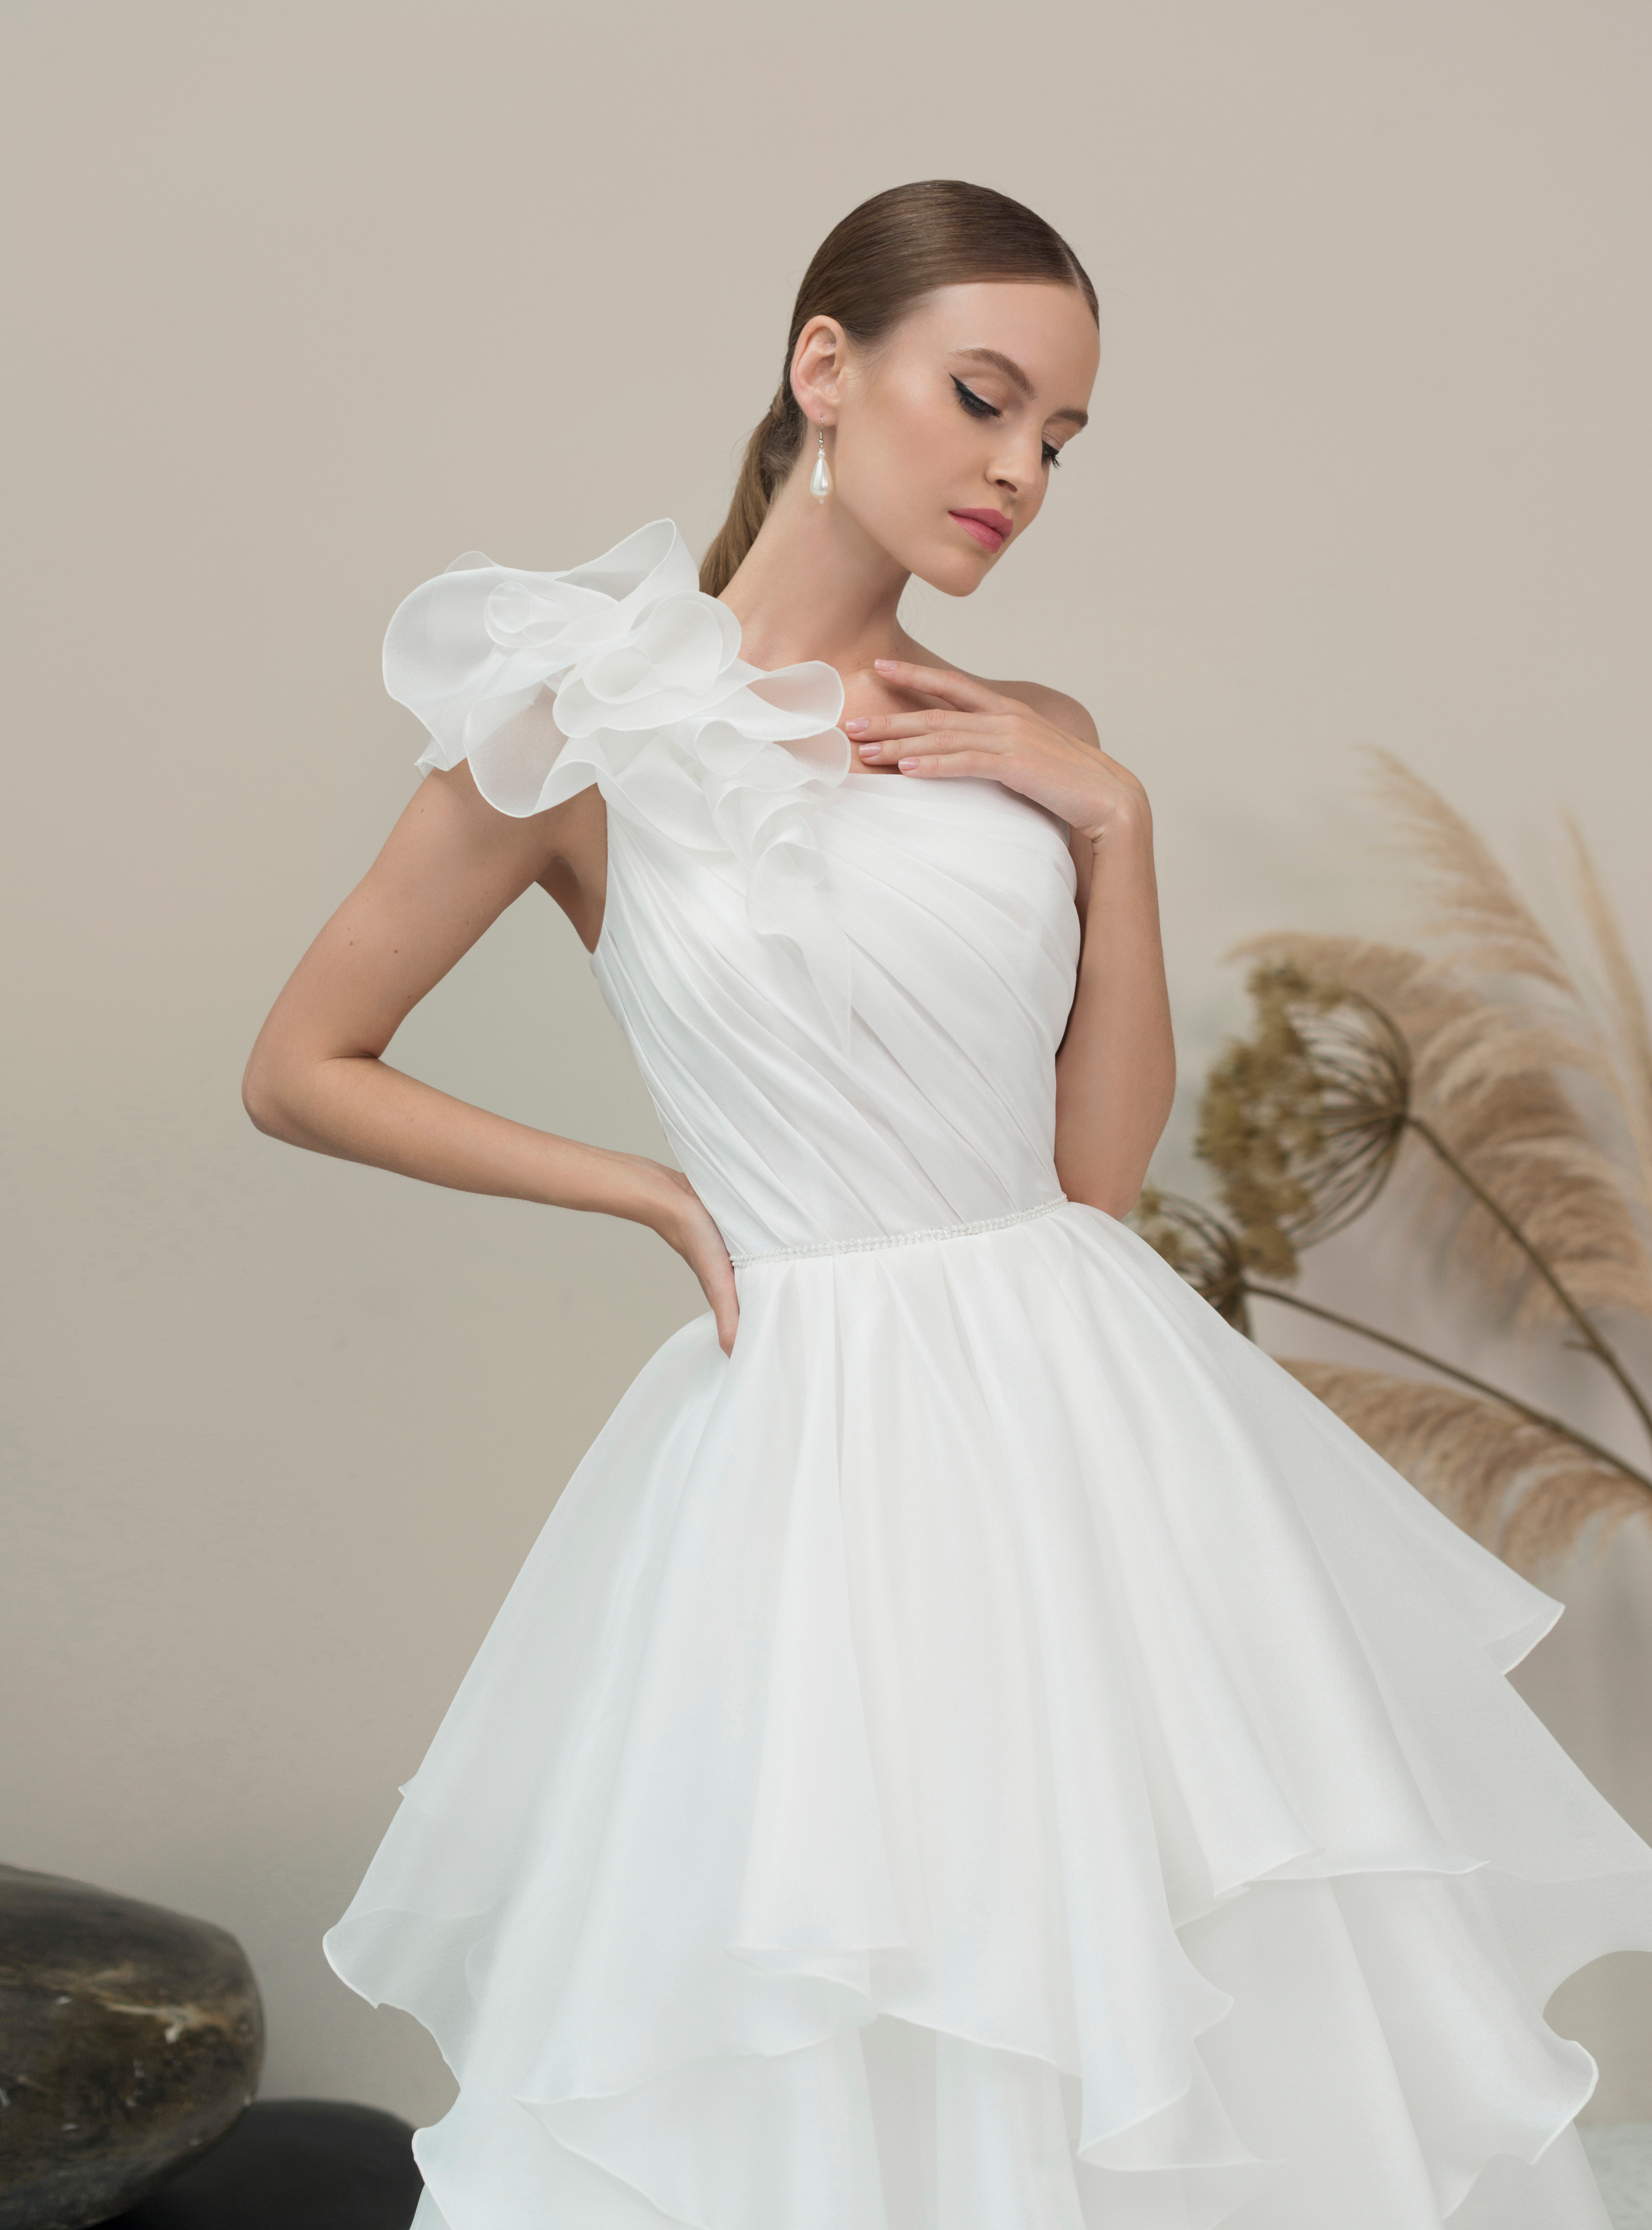 Купить свадебное платье «Кенджи» Мэрри Марк из коллекции 2022 года в Мэри Трюфель